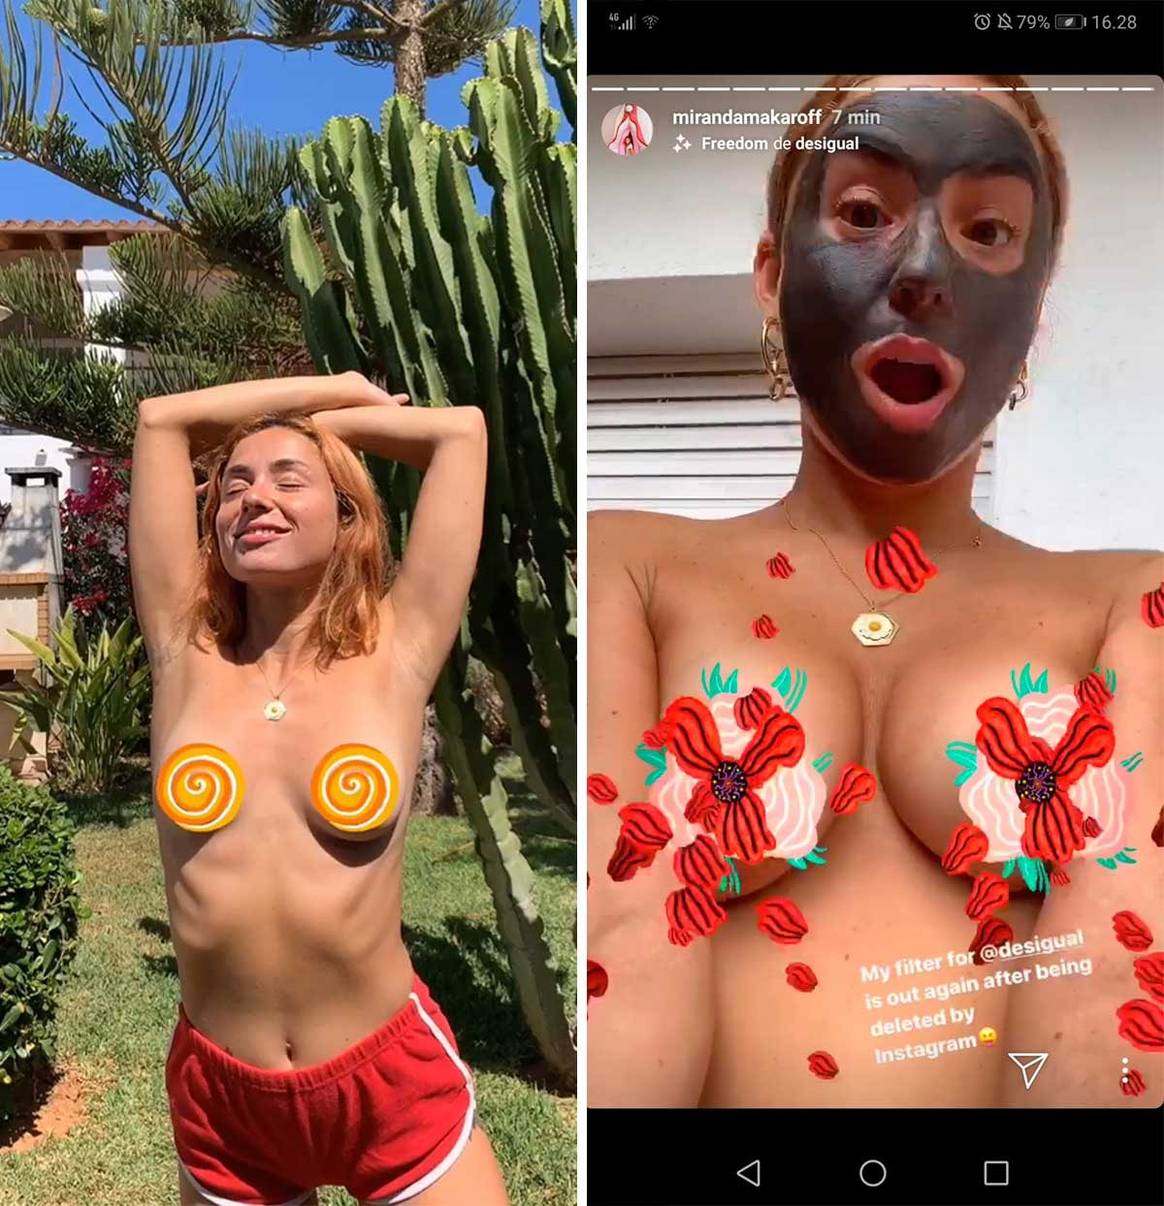 Desigual y Miranda Makaroff crean un filtro para pechos en Instagram